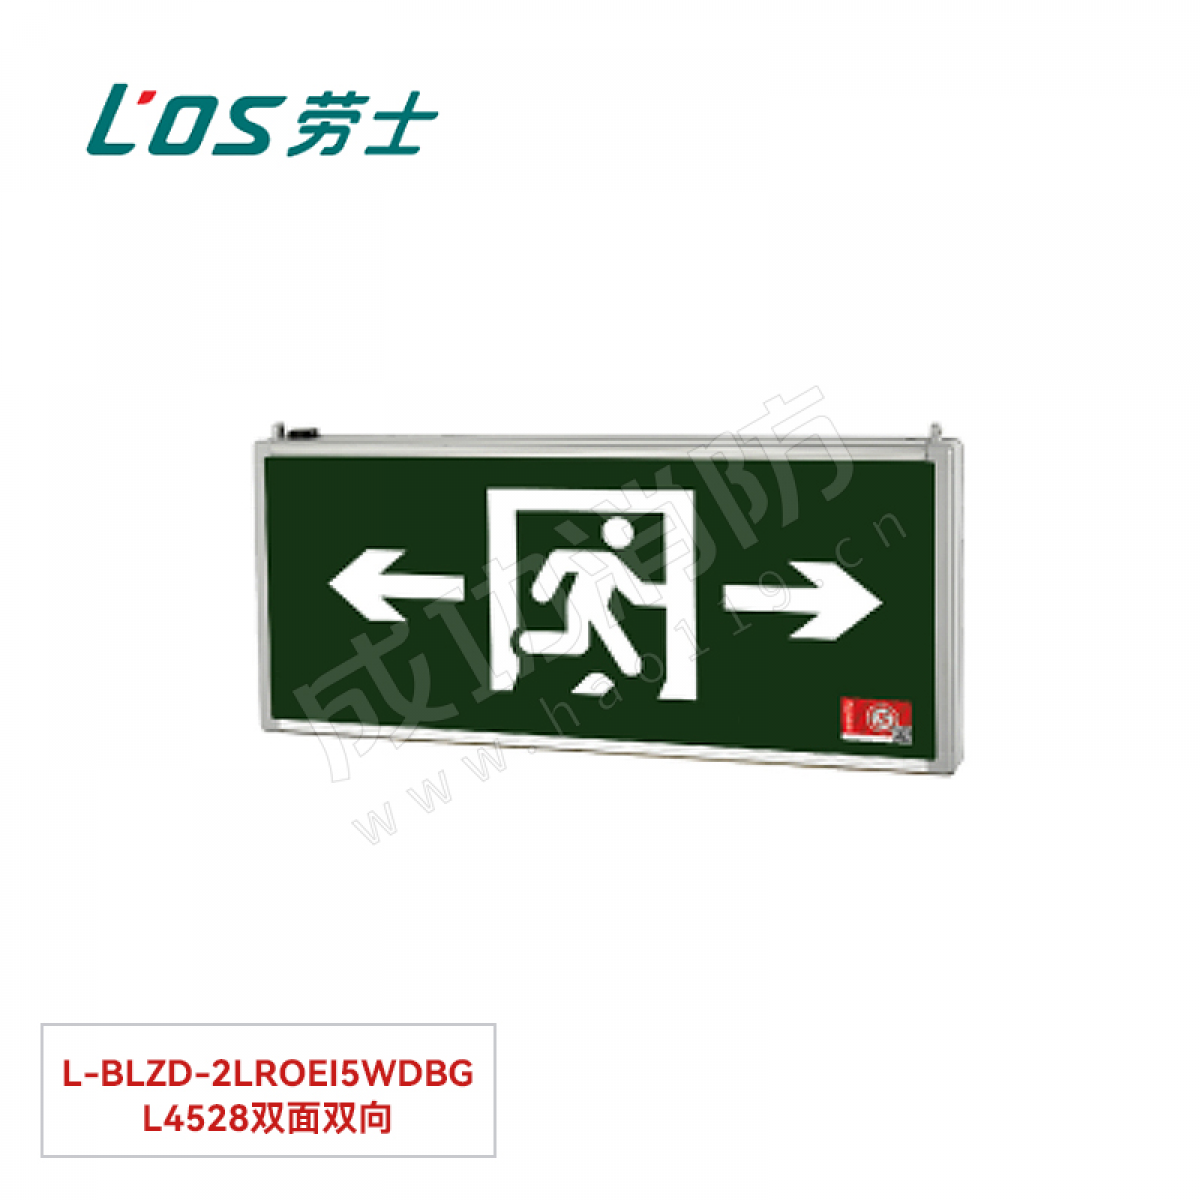 劳士 消防应急标志灯(吊装) L-BLZD-2LROEⅠ5WDBB L4505双面双向